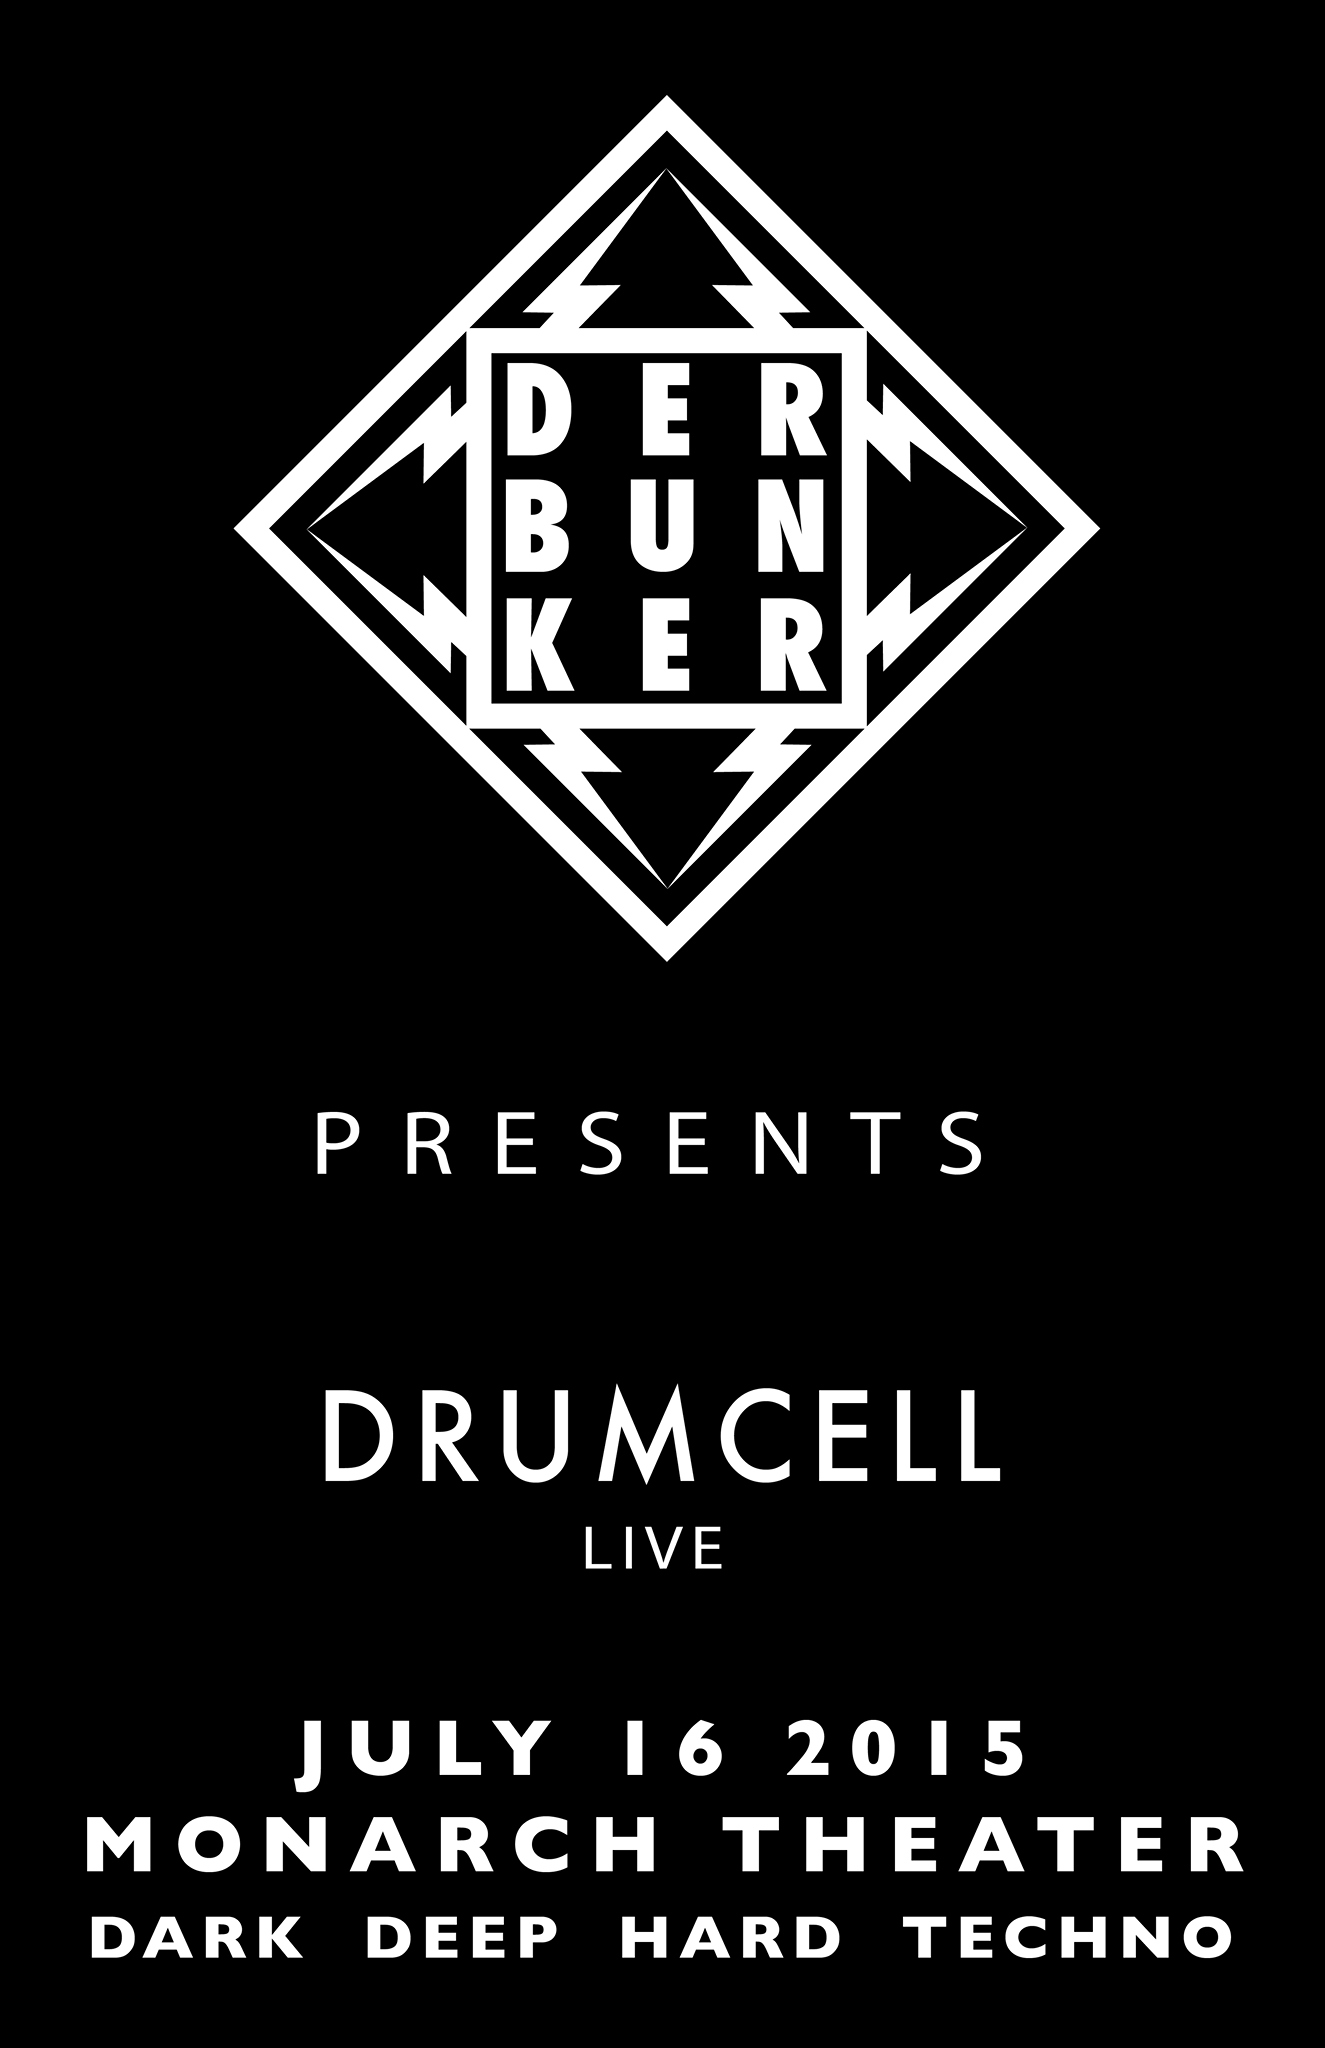 Drumcell - Der Bunker